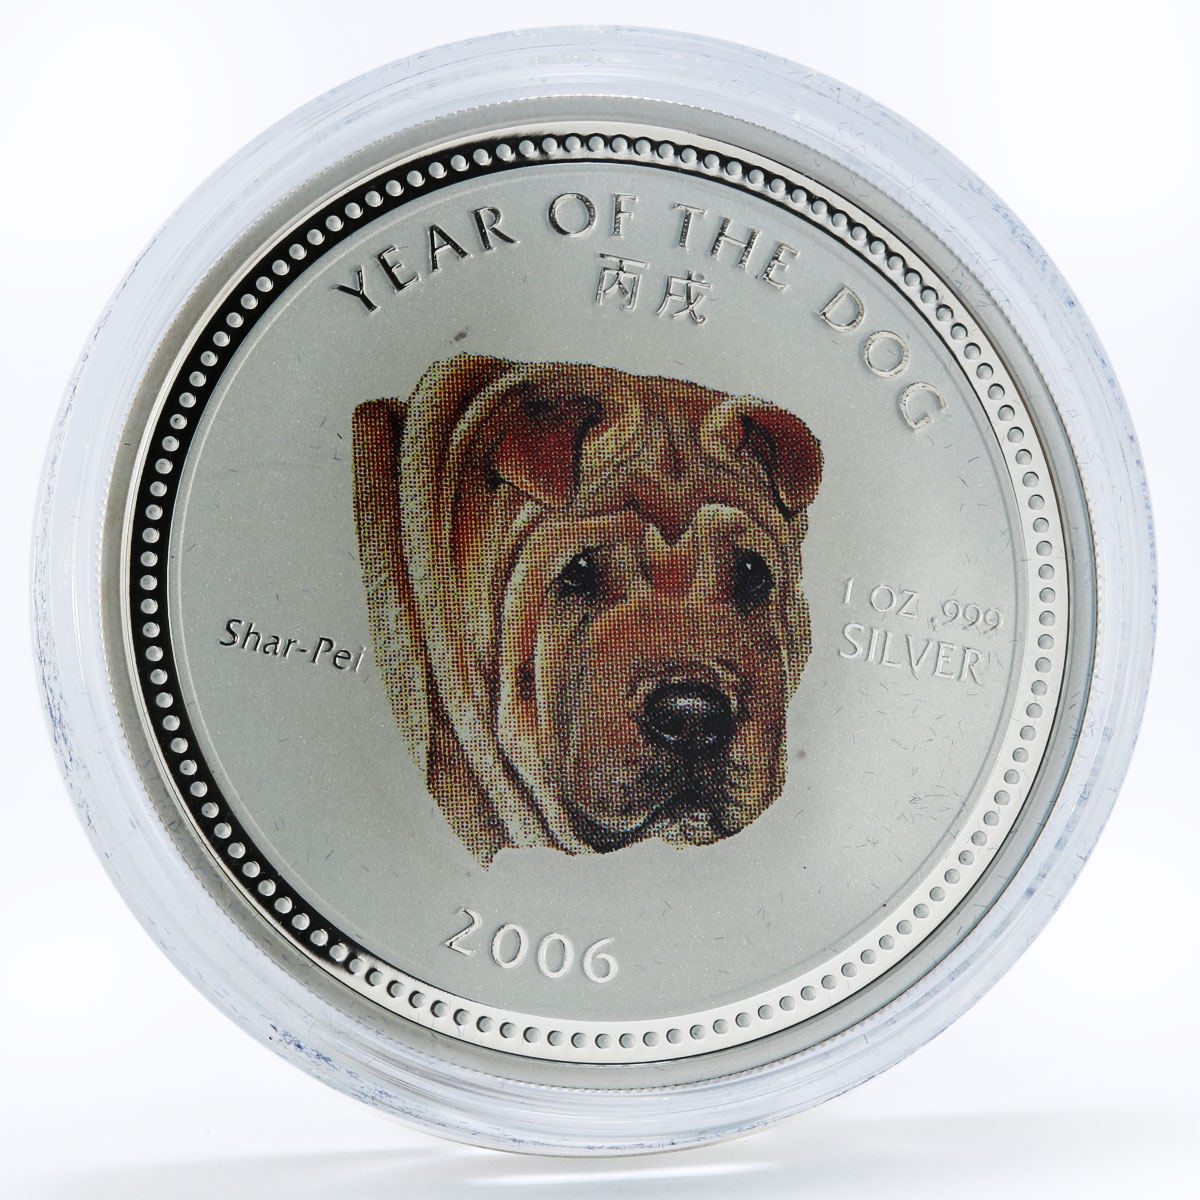 Cambodia 3000 riels Shar Pei Year of the Dog Lunar Calendar silver coin 2006